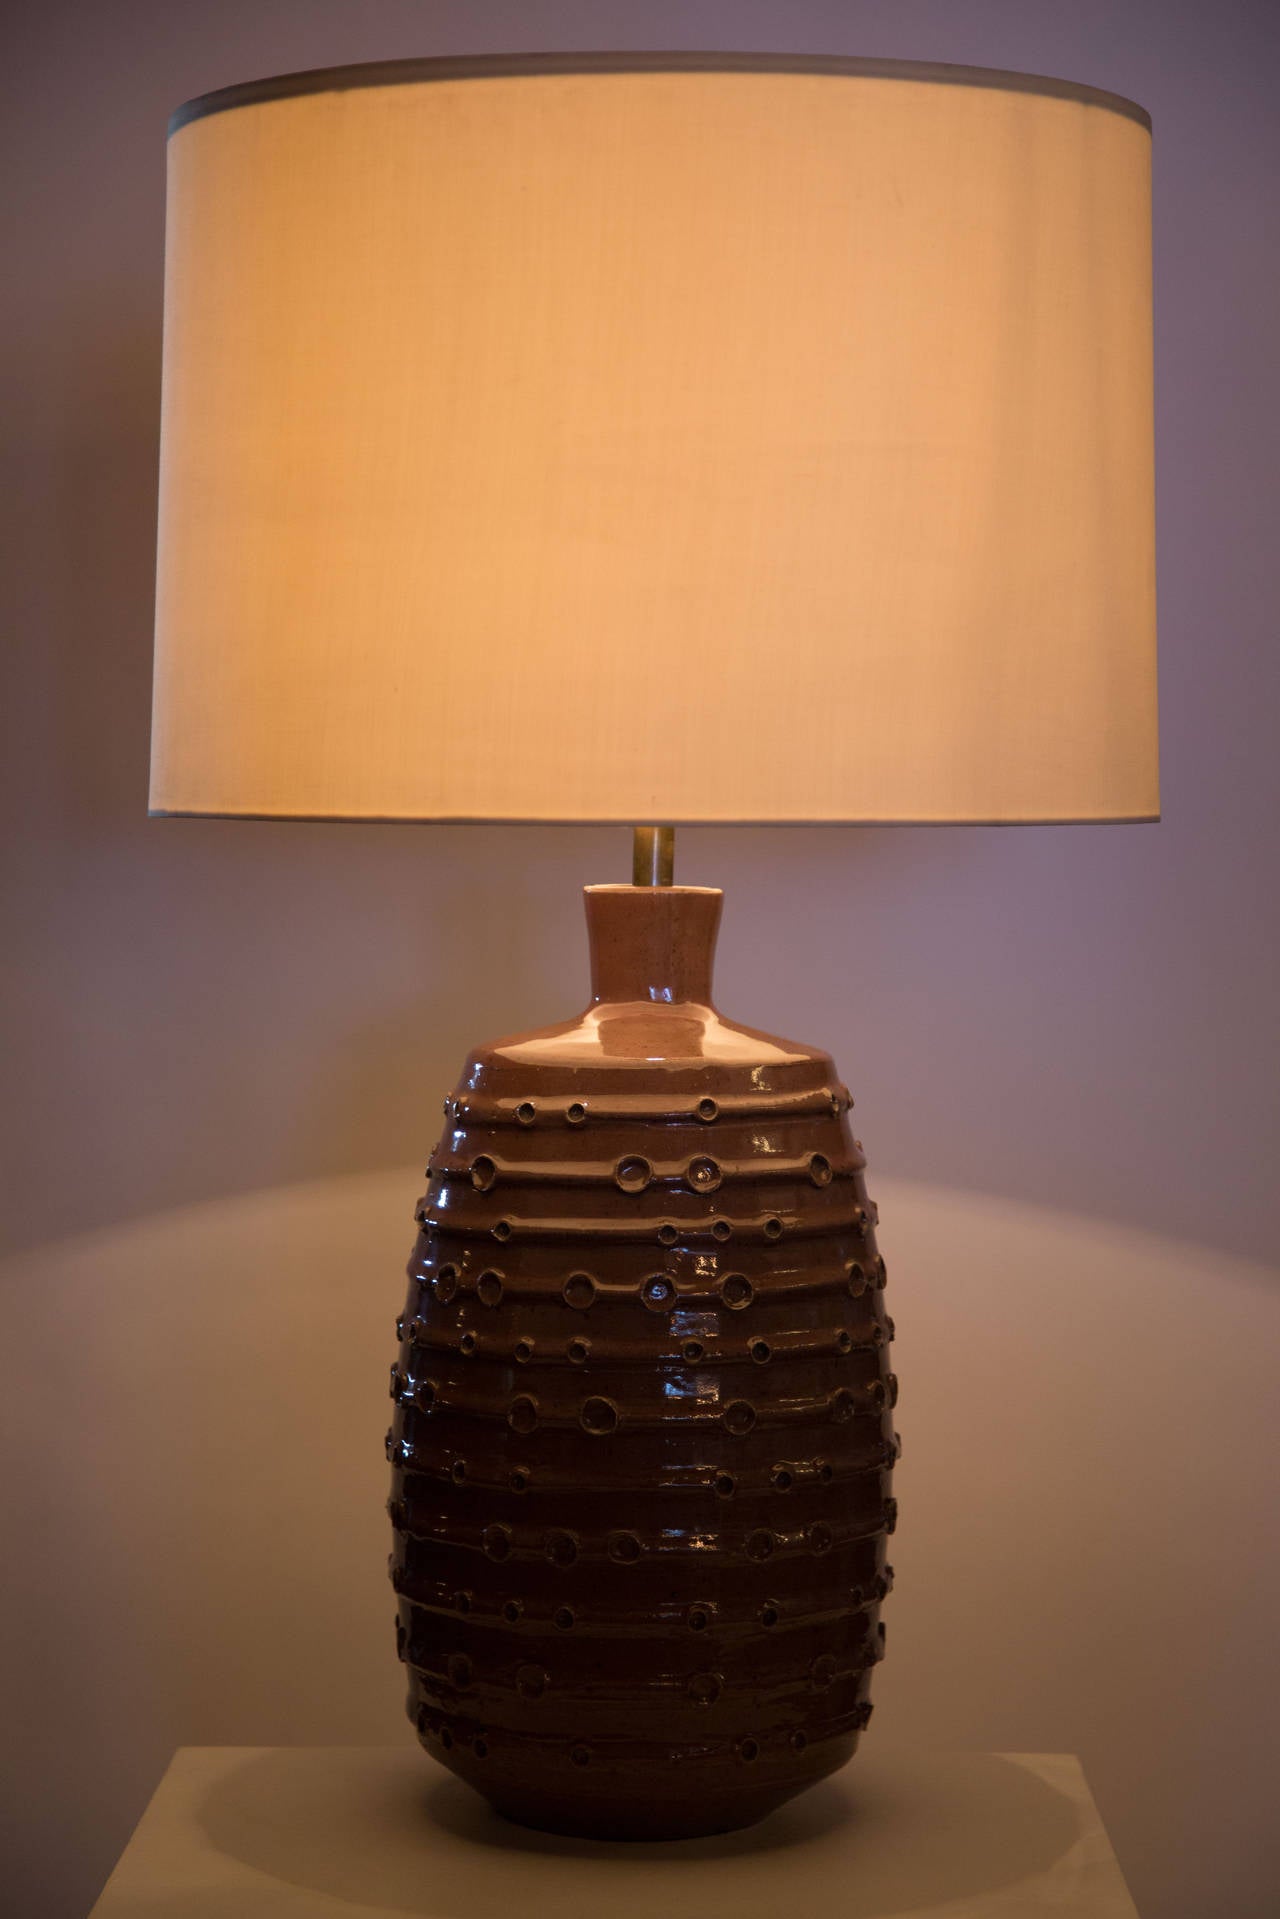 Textured ceramic table lamp.